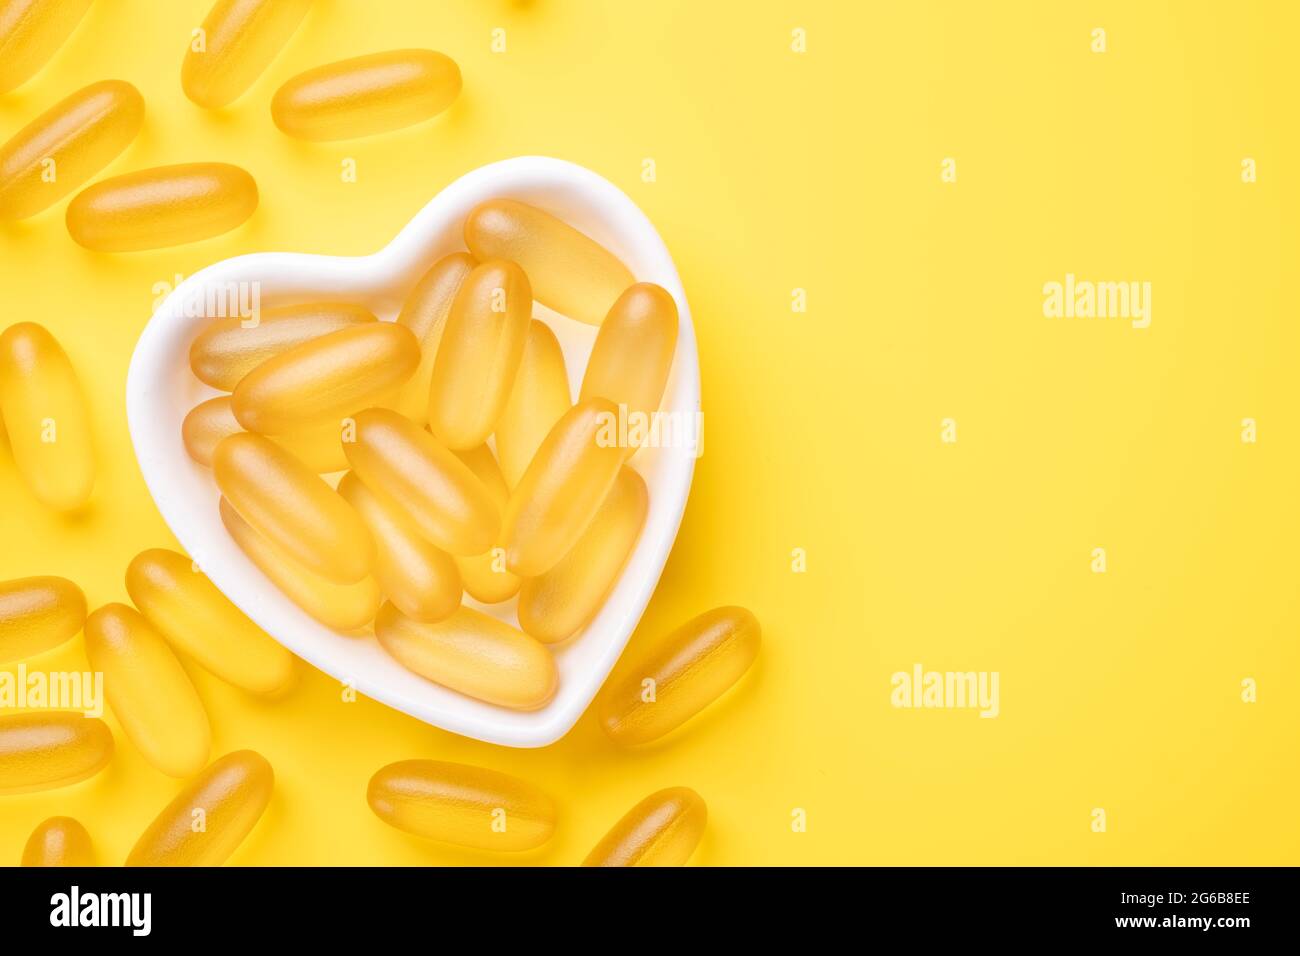 Les capsules d'huile de poisson de vitamine D et Omega 3 complètent dans une plaque en forme de cœur sur fond jaune. Concept de soins de santé. Vue de dessus - image Banque D'Images